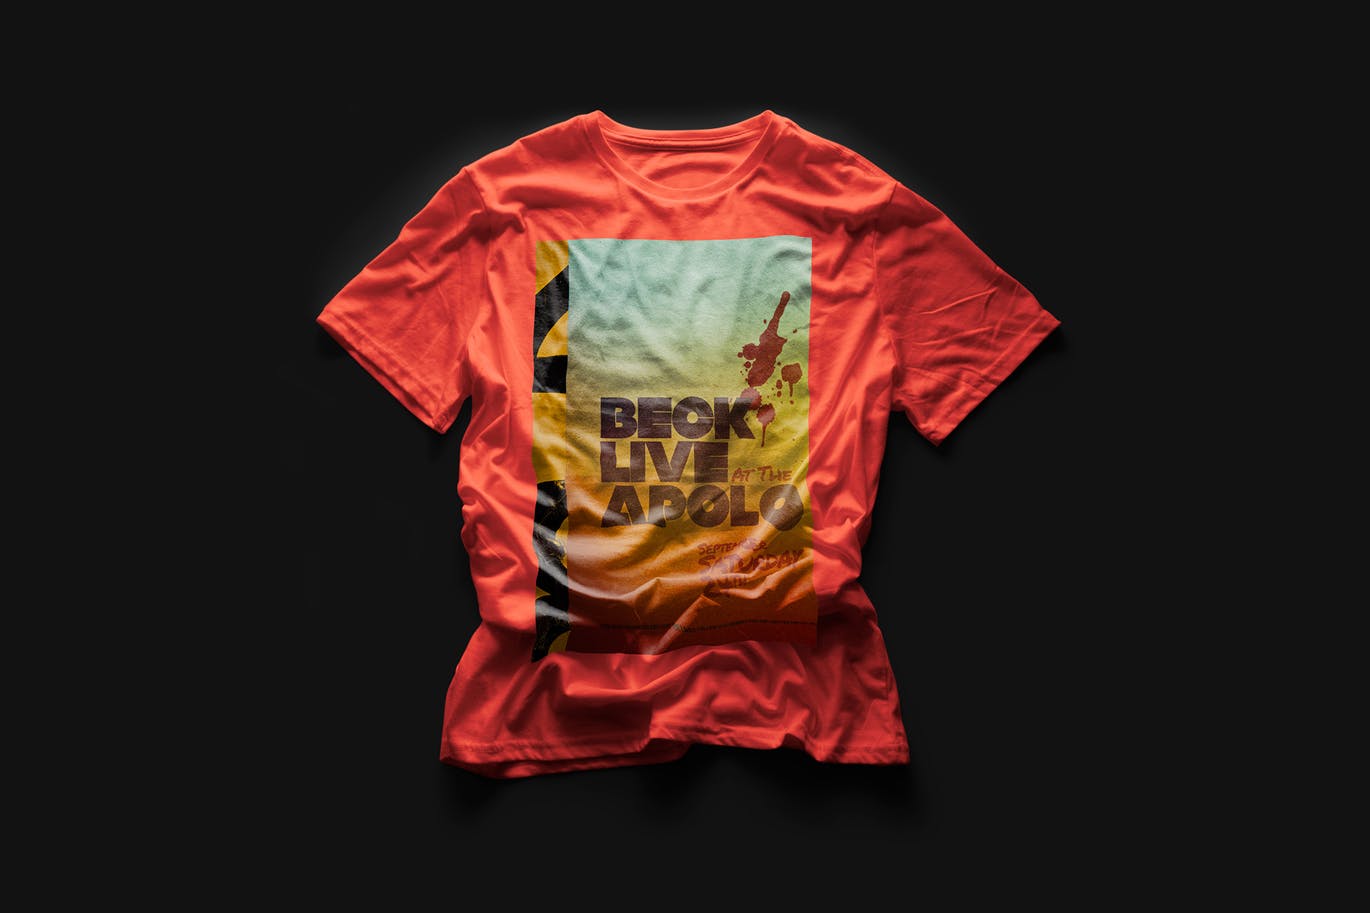 都市风格T恤印花图案设计预览样机非凡图库精选 Urban T-Shirt Mock-Up插图(6)